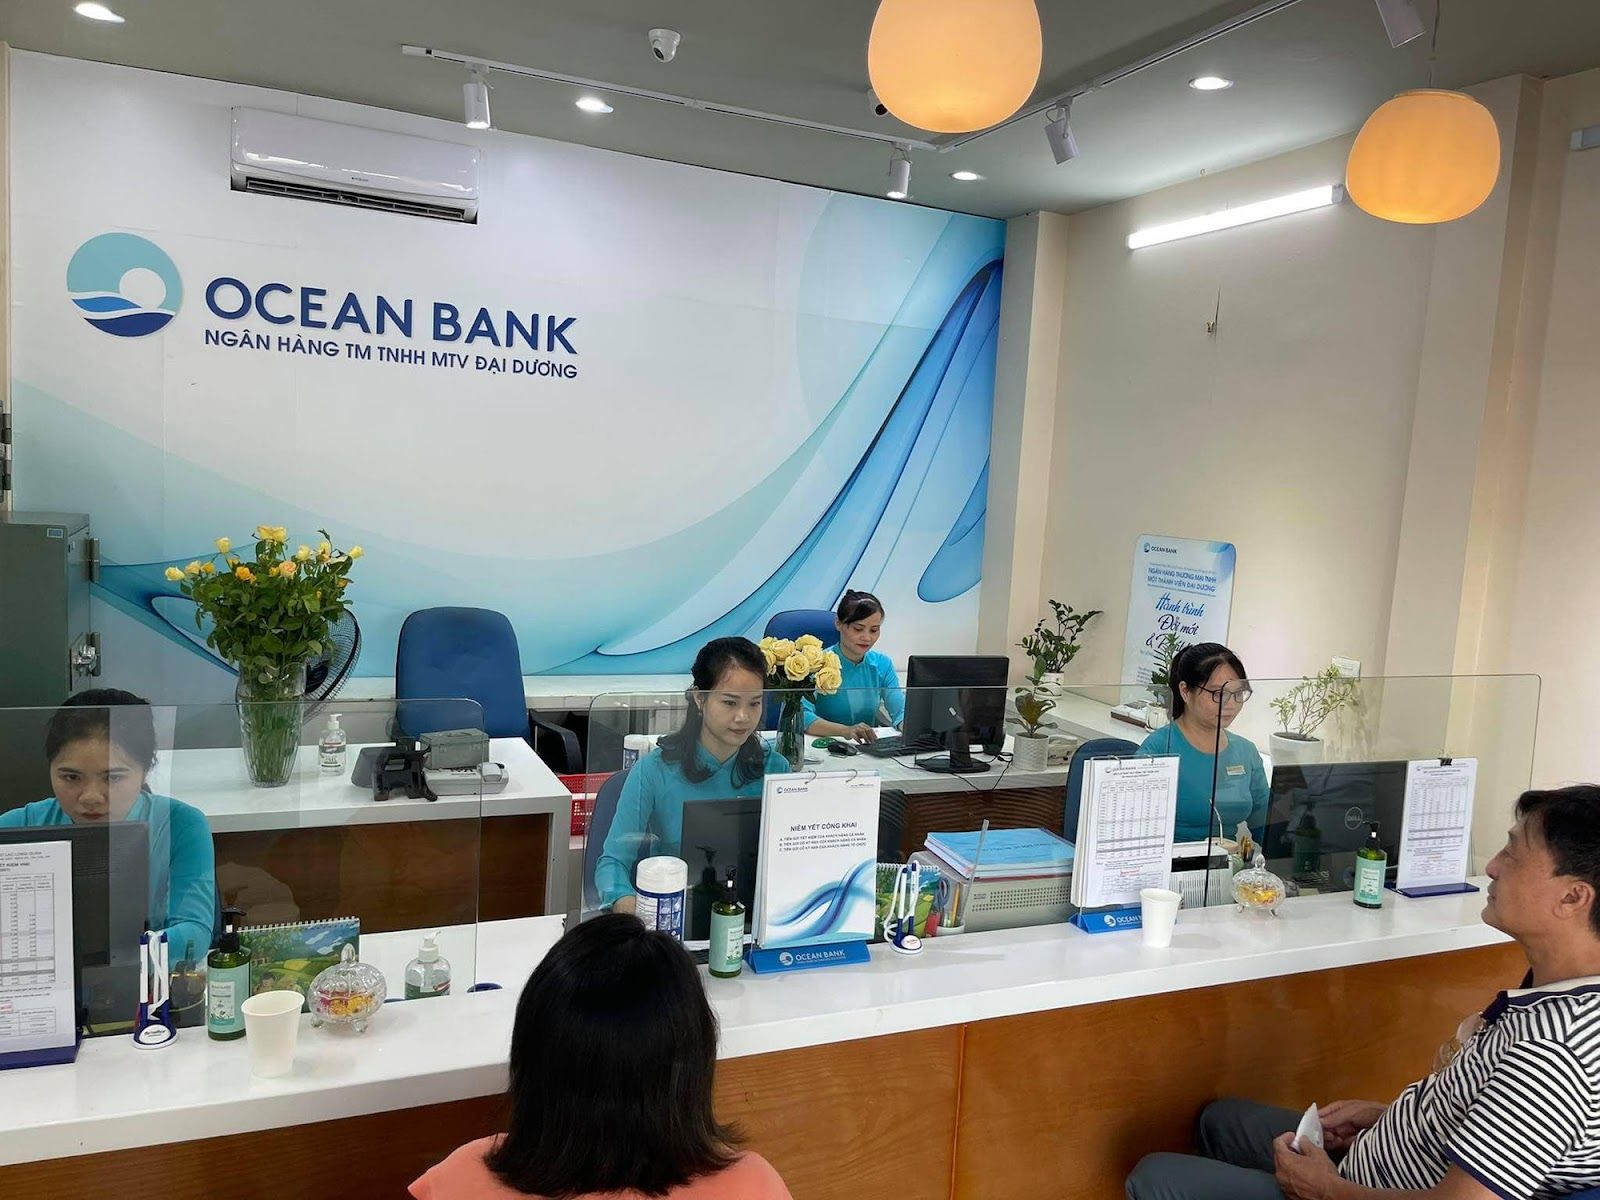 Ngân hàng Oceanbank có cho vay mua dự án Masteri Waterfront không?